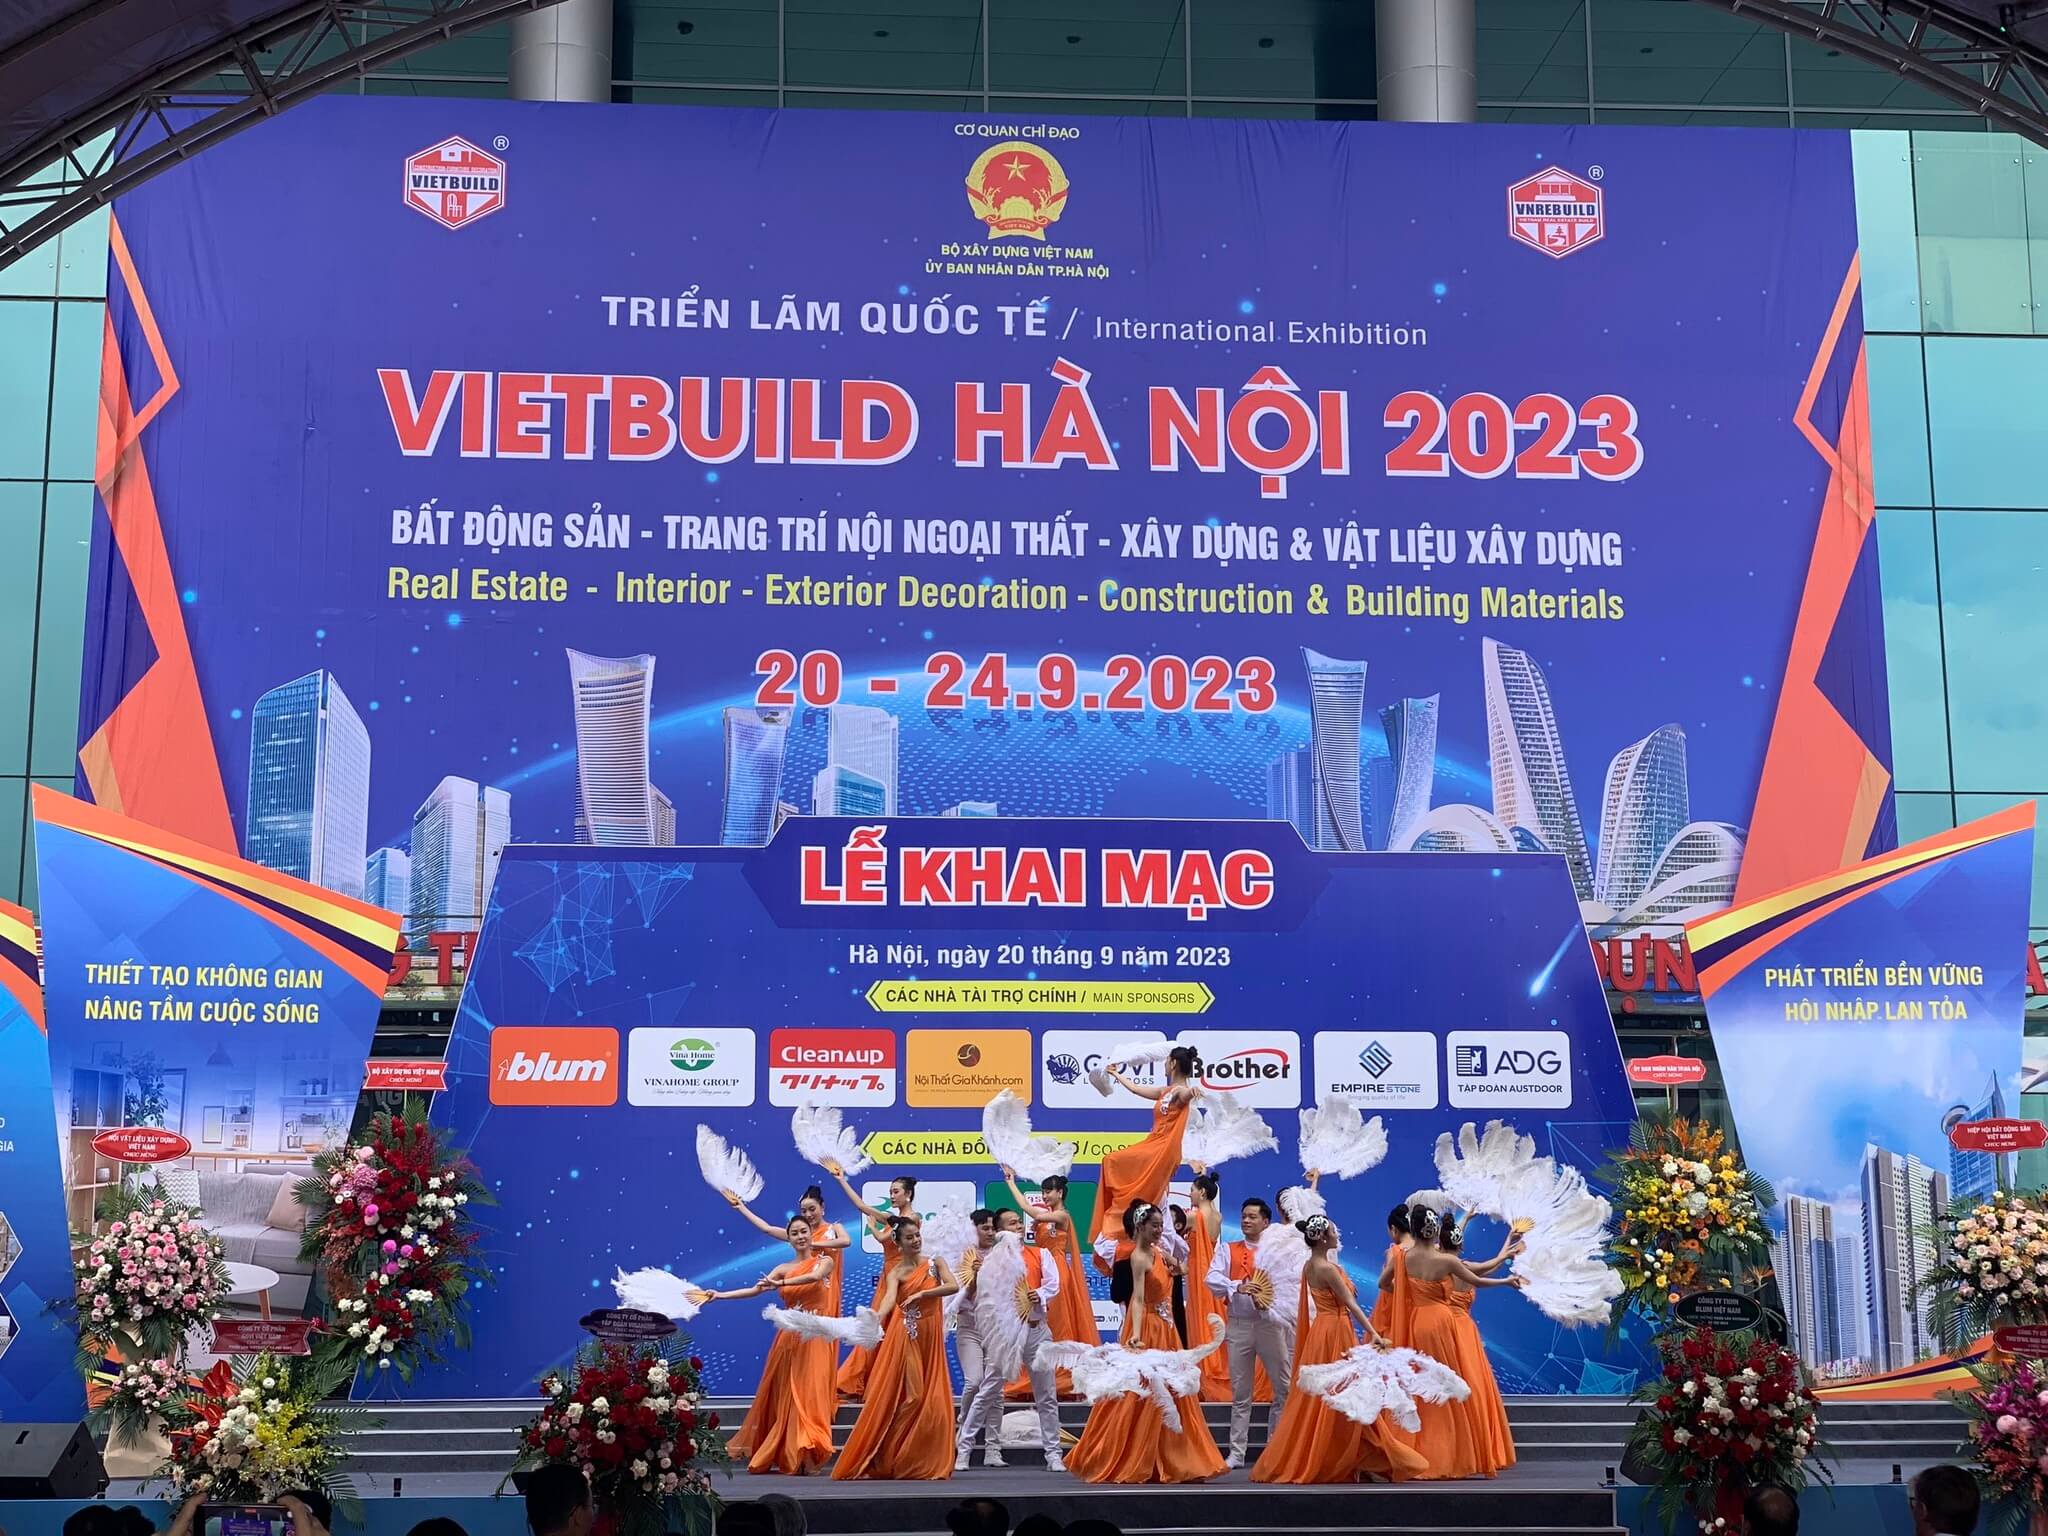 DDT tham gia triển lãm quốc tế Vietbuild Hà Nội 2023 lần thứ 2